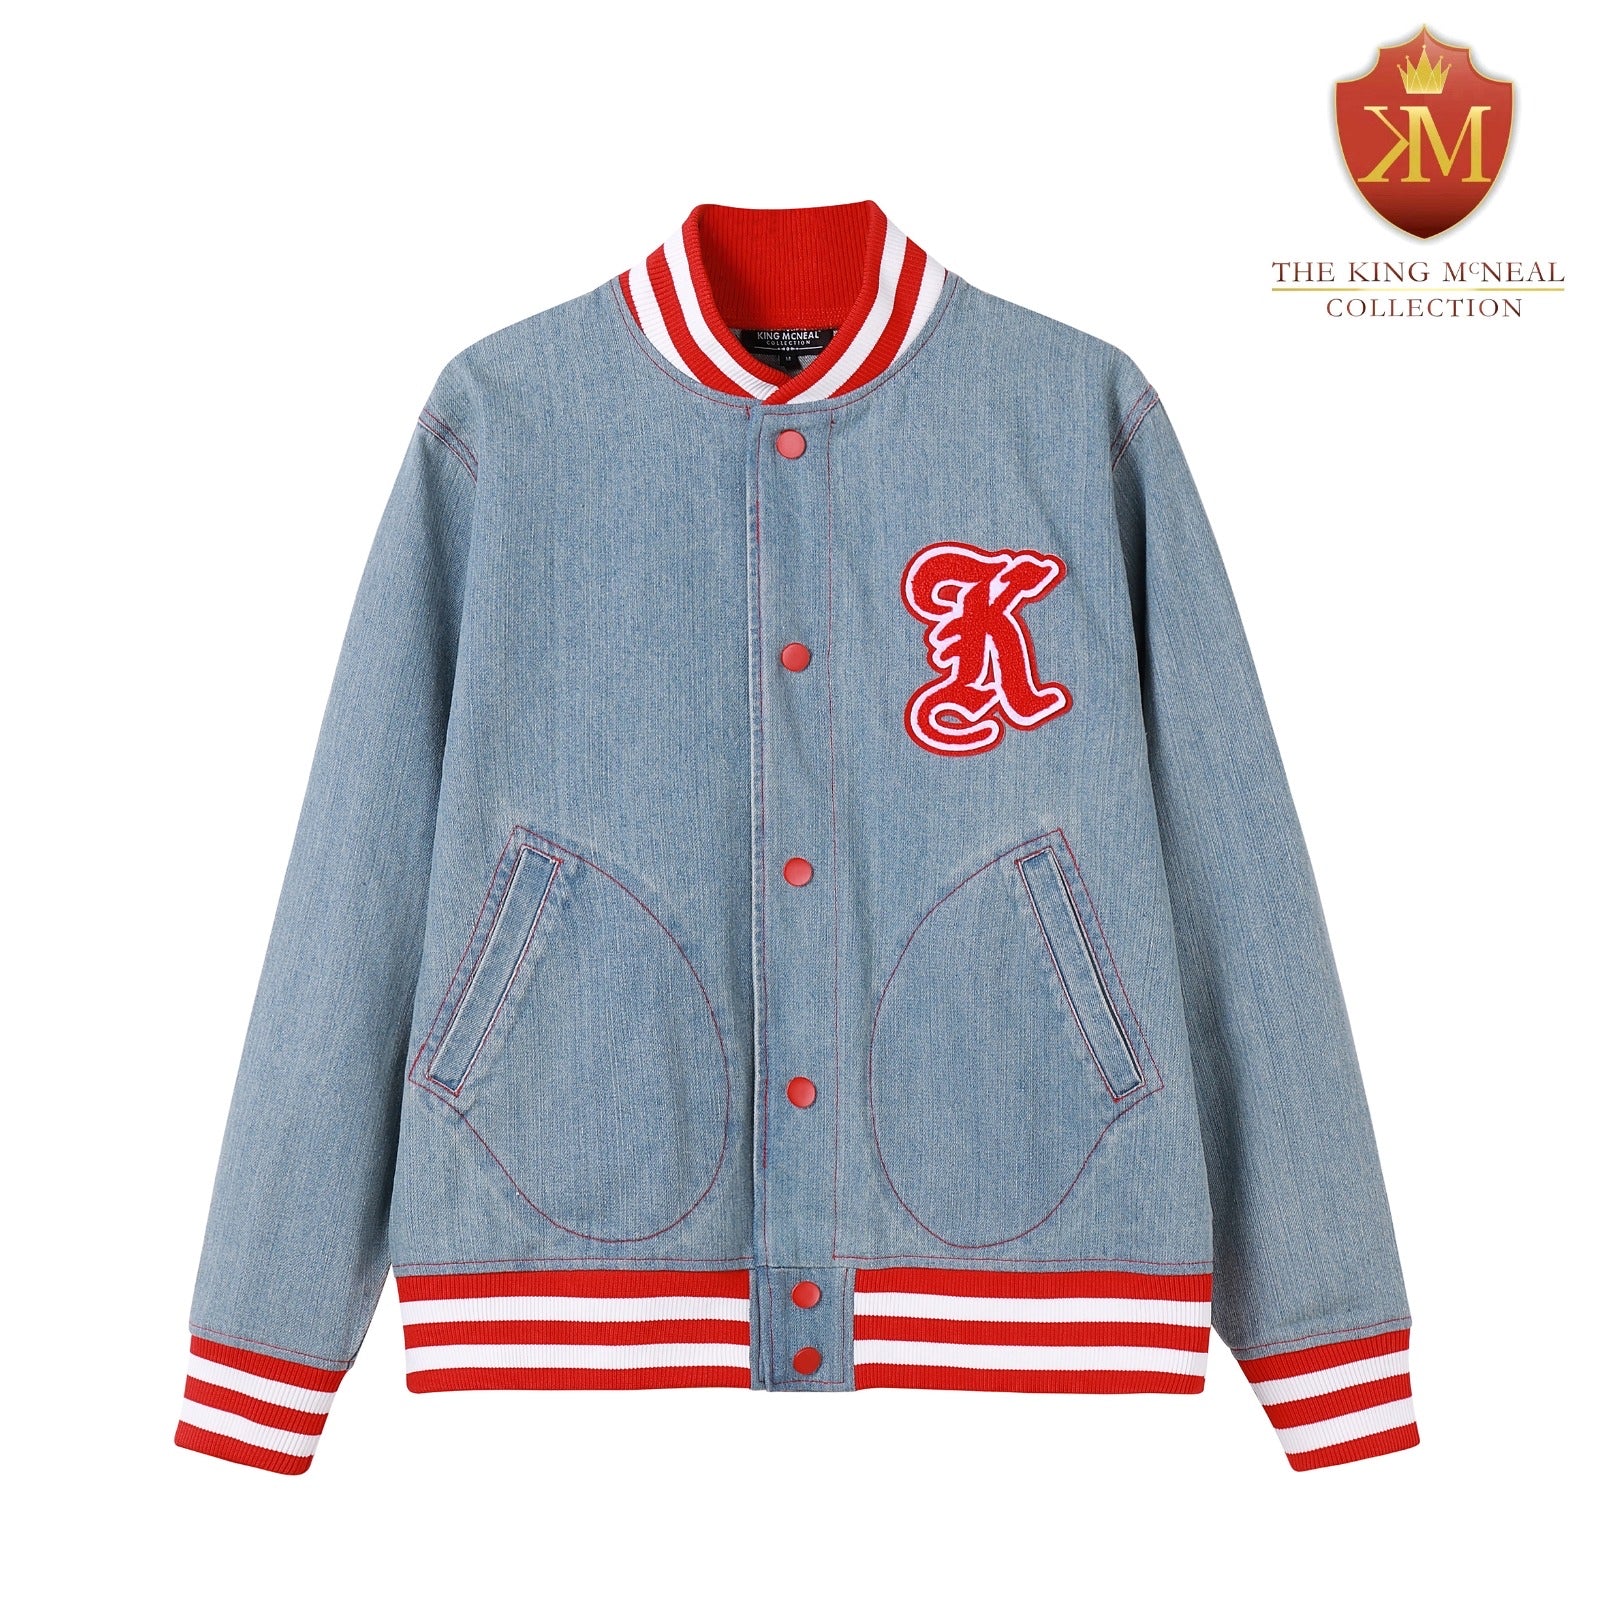 Kappa “K” Denim Chenille Jacket